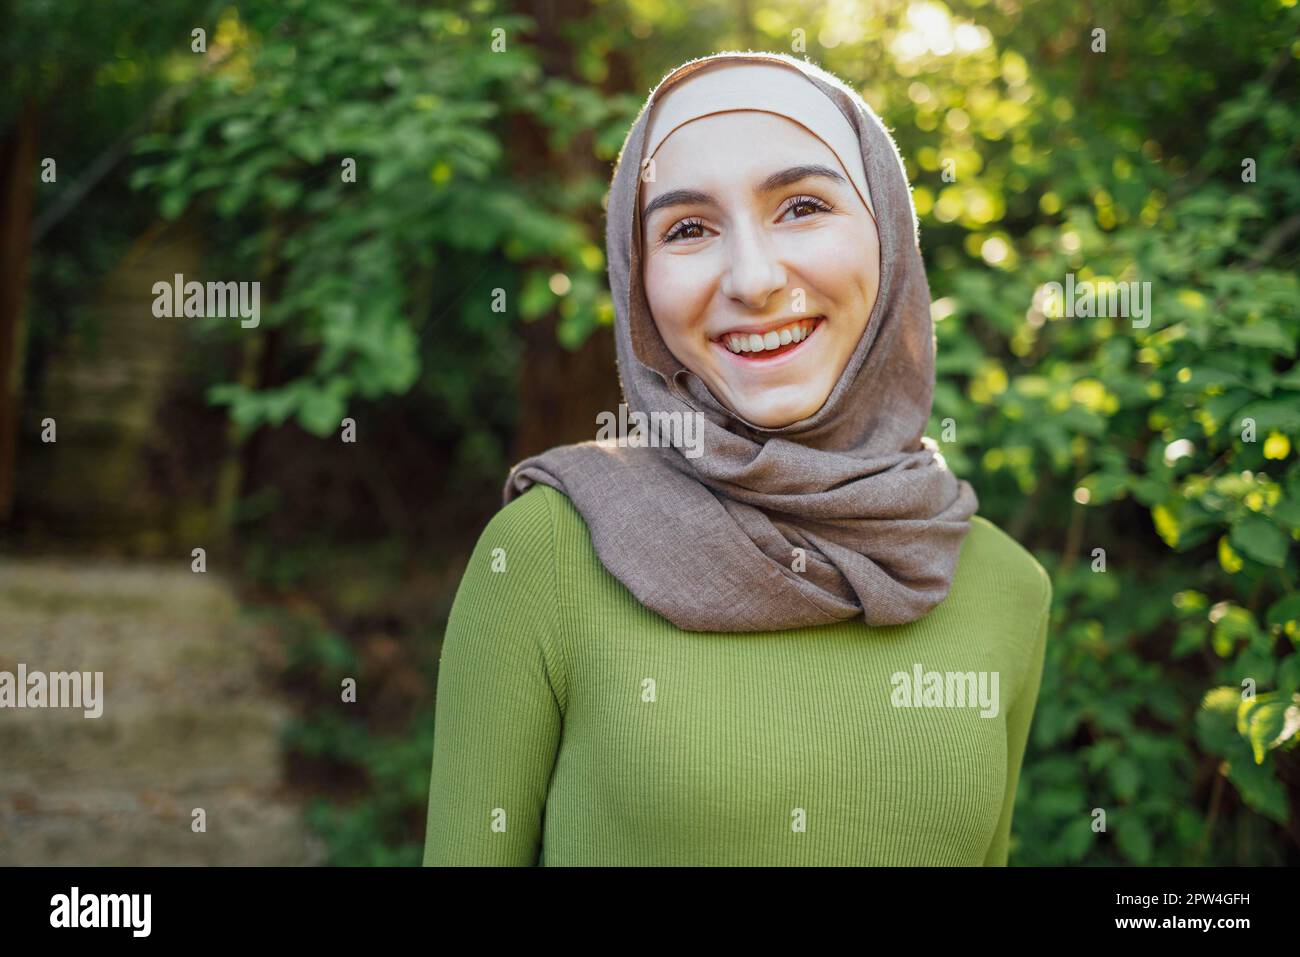 Hermosa adolescente alegre niña de la escuela secundaria usando ropa musulmana colorida divertirse al aire libre Foto de stock